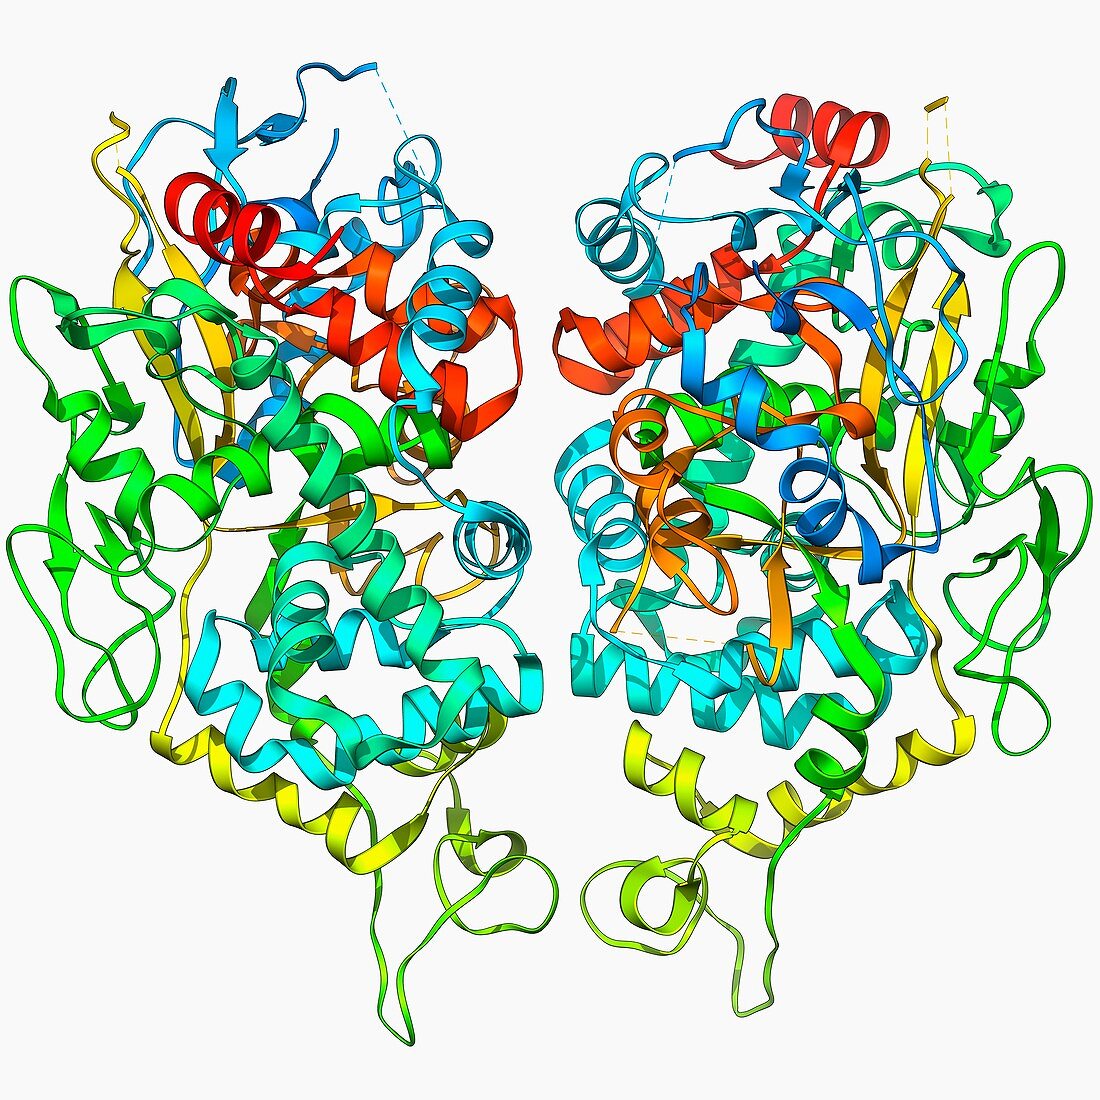 Herpesvirus capsid protein